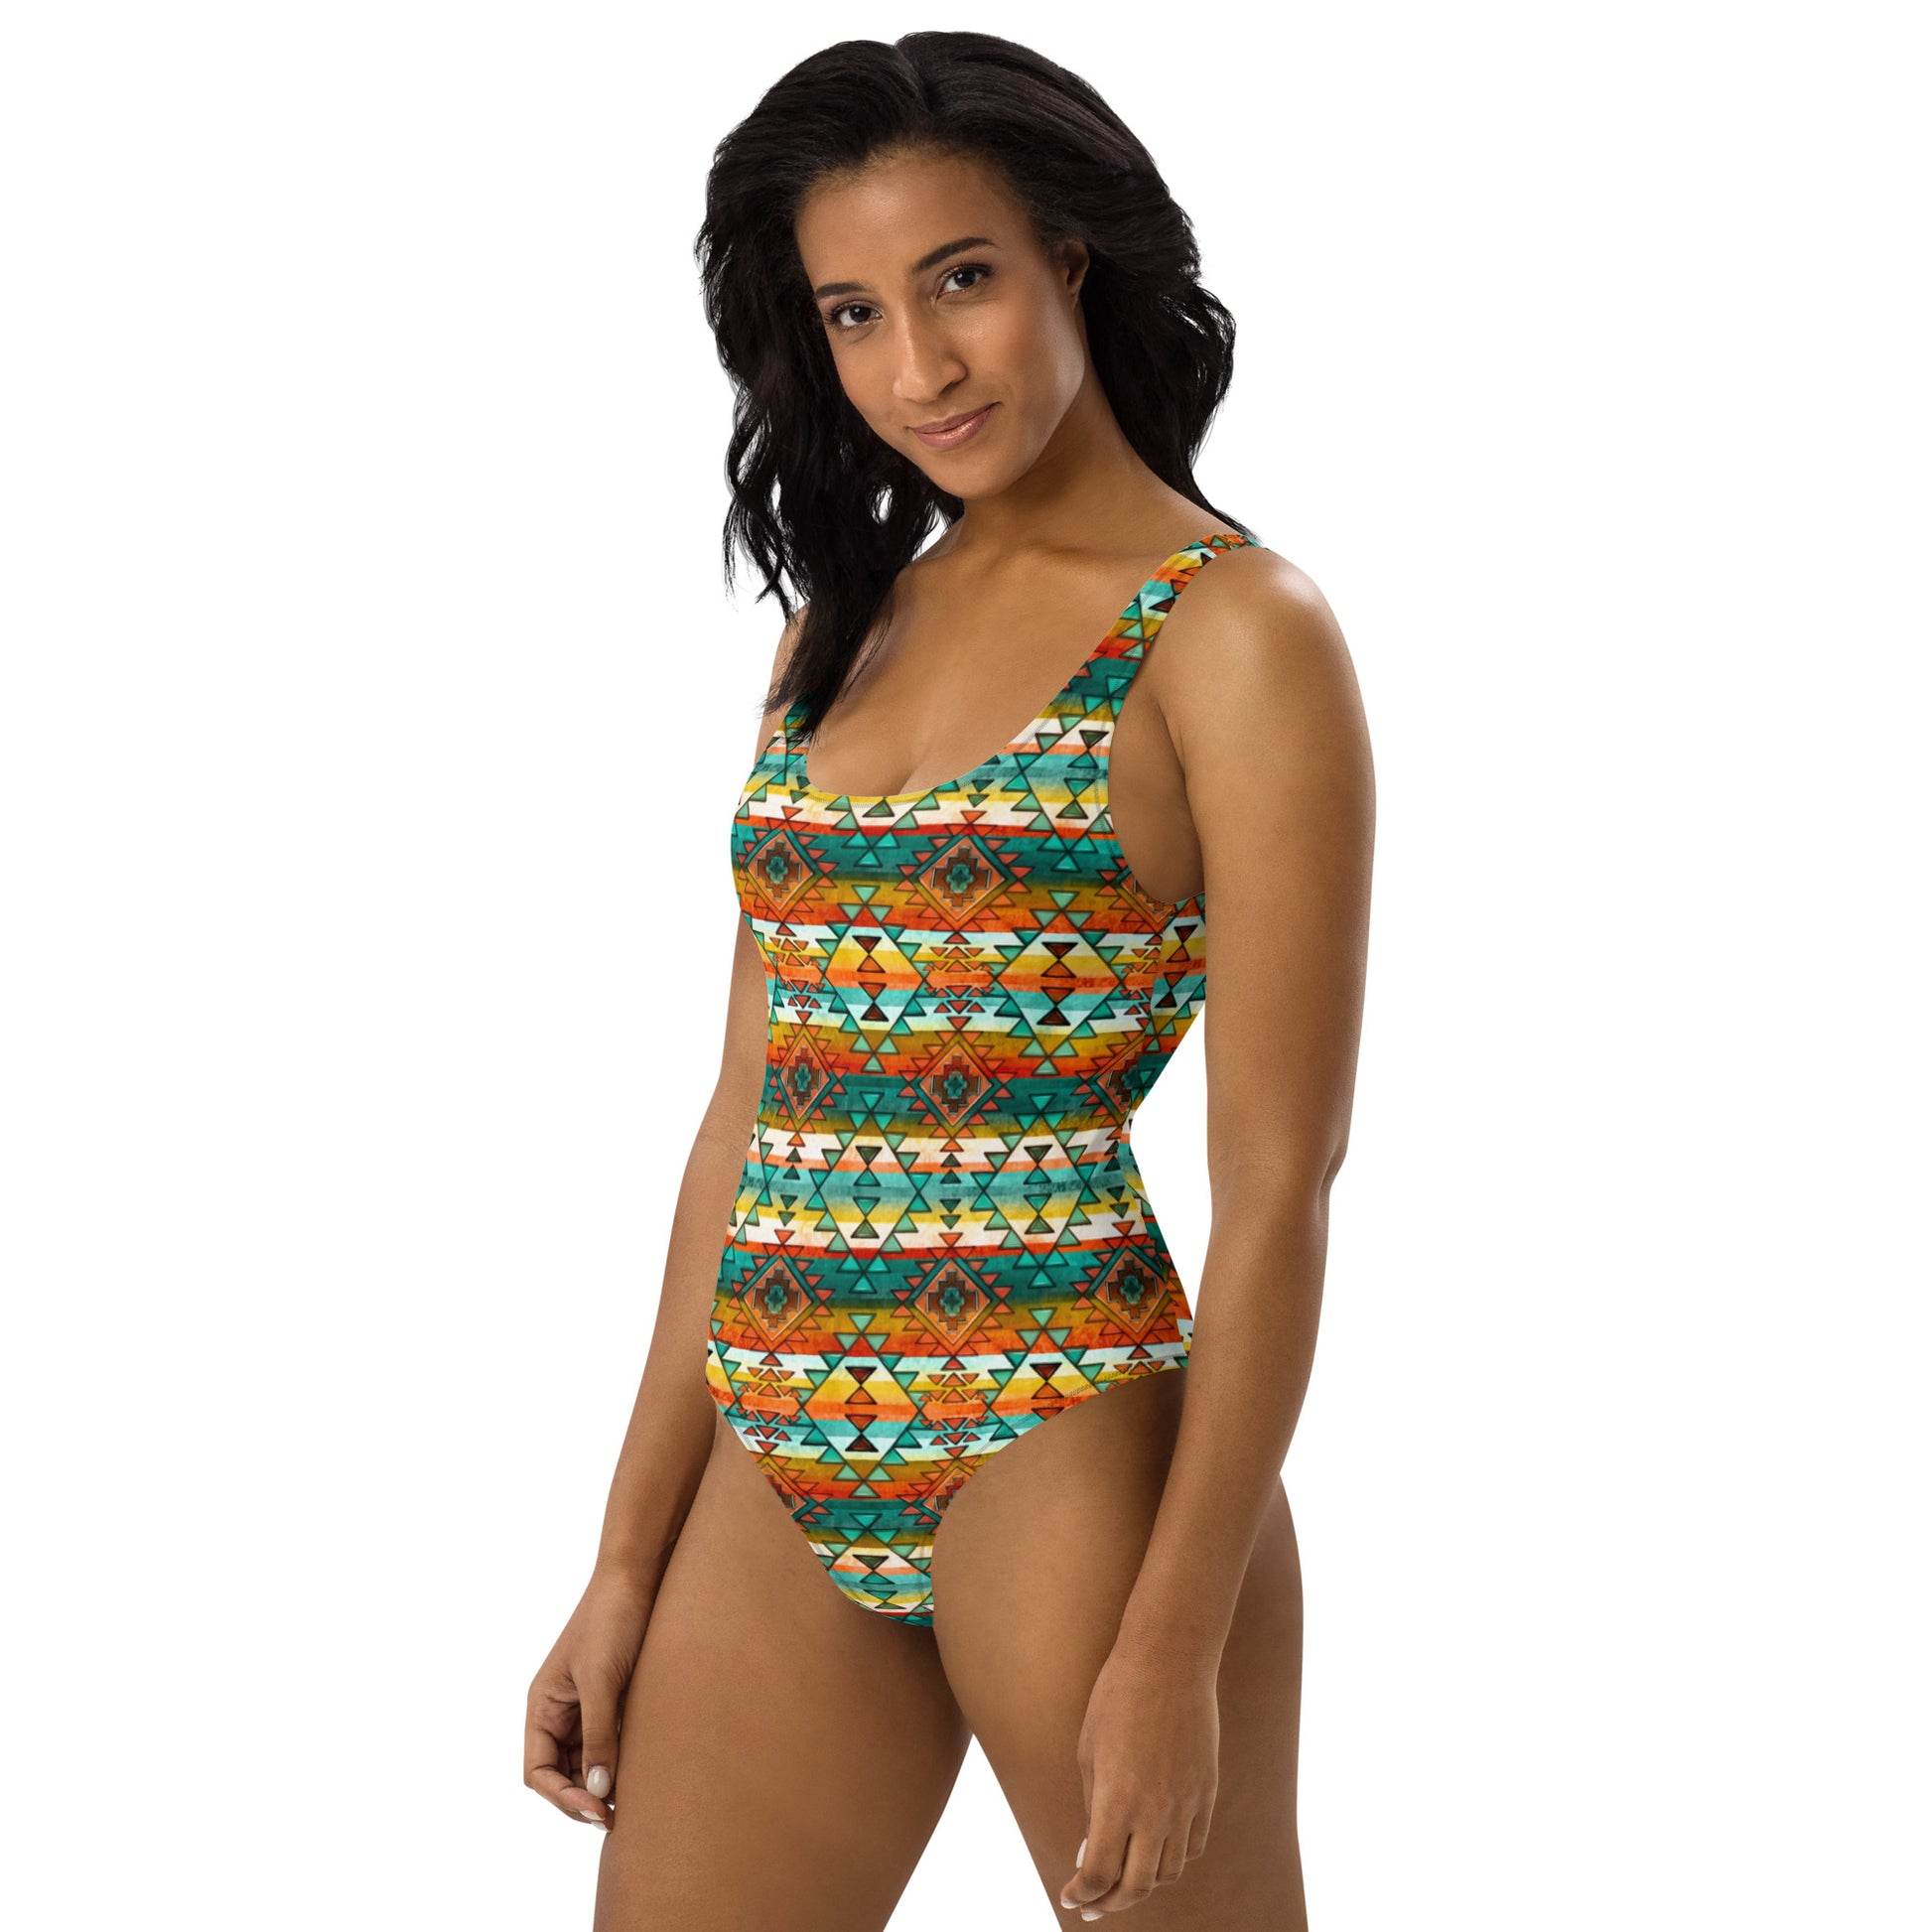 Yeehaw Mustard Aztec One-Piece Swimsuit - #onepiece, #op, aztec print, bikini, mustard, mustard aztec, swimming, western, yeehaw -  - Baha Ranch Western Wear